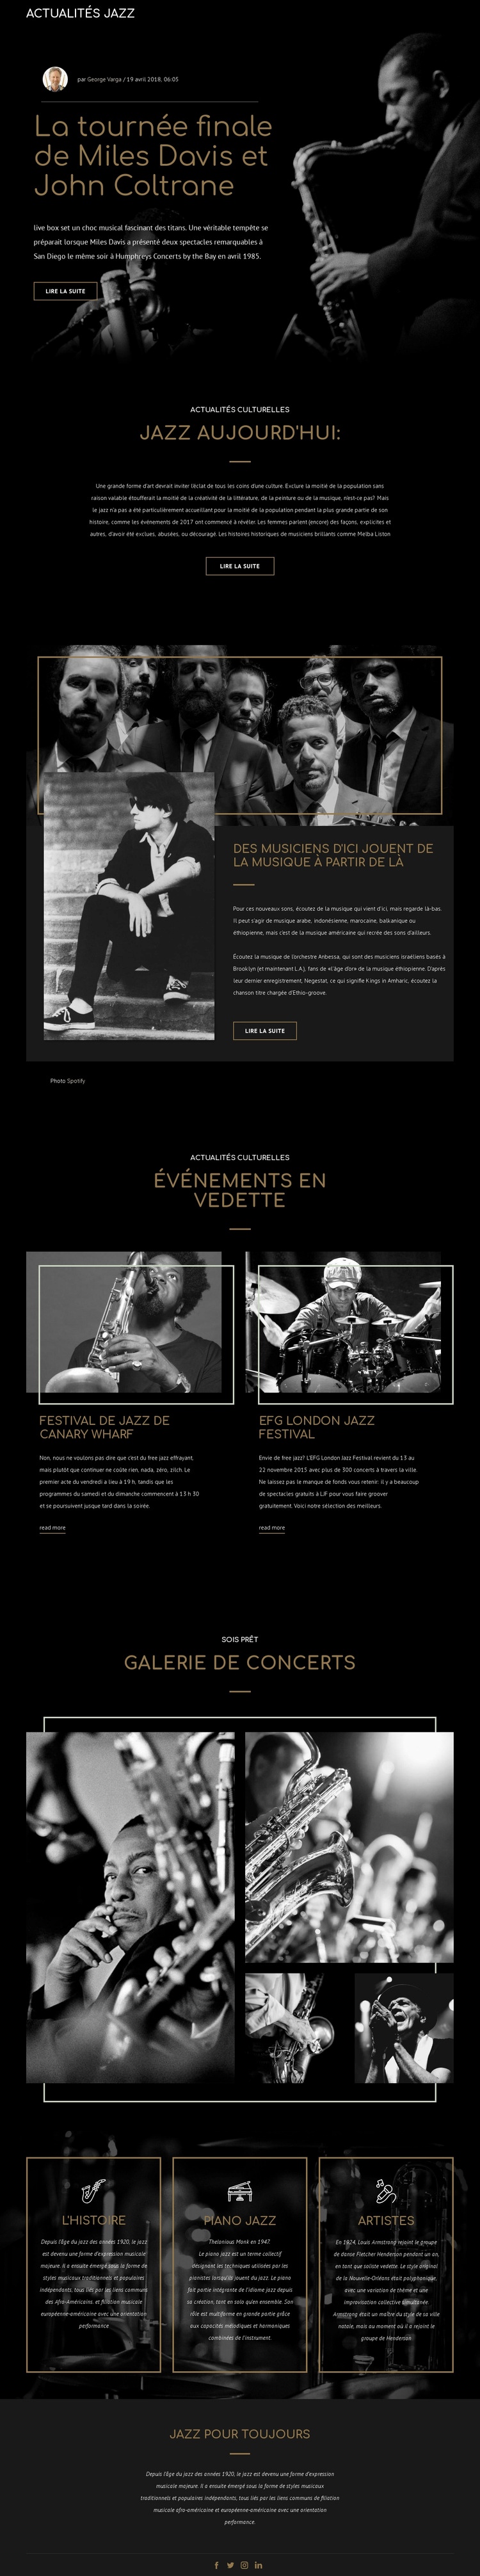 Legengs de la musique jazz Maquette de site Web